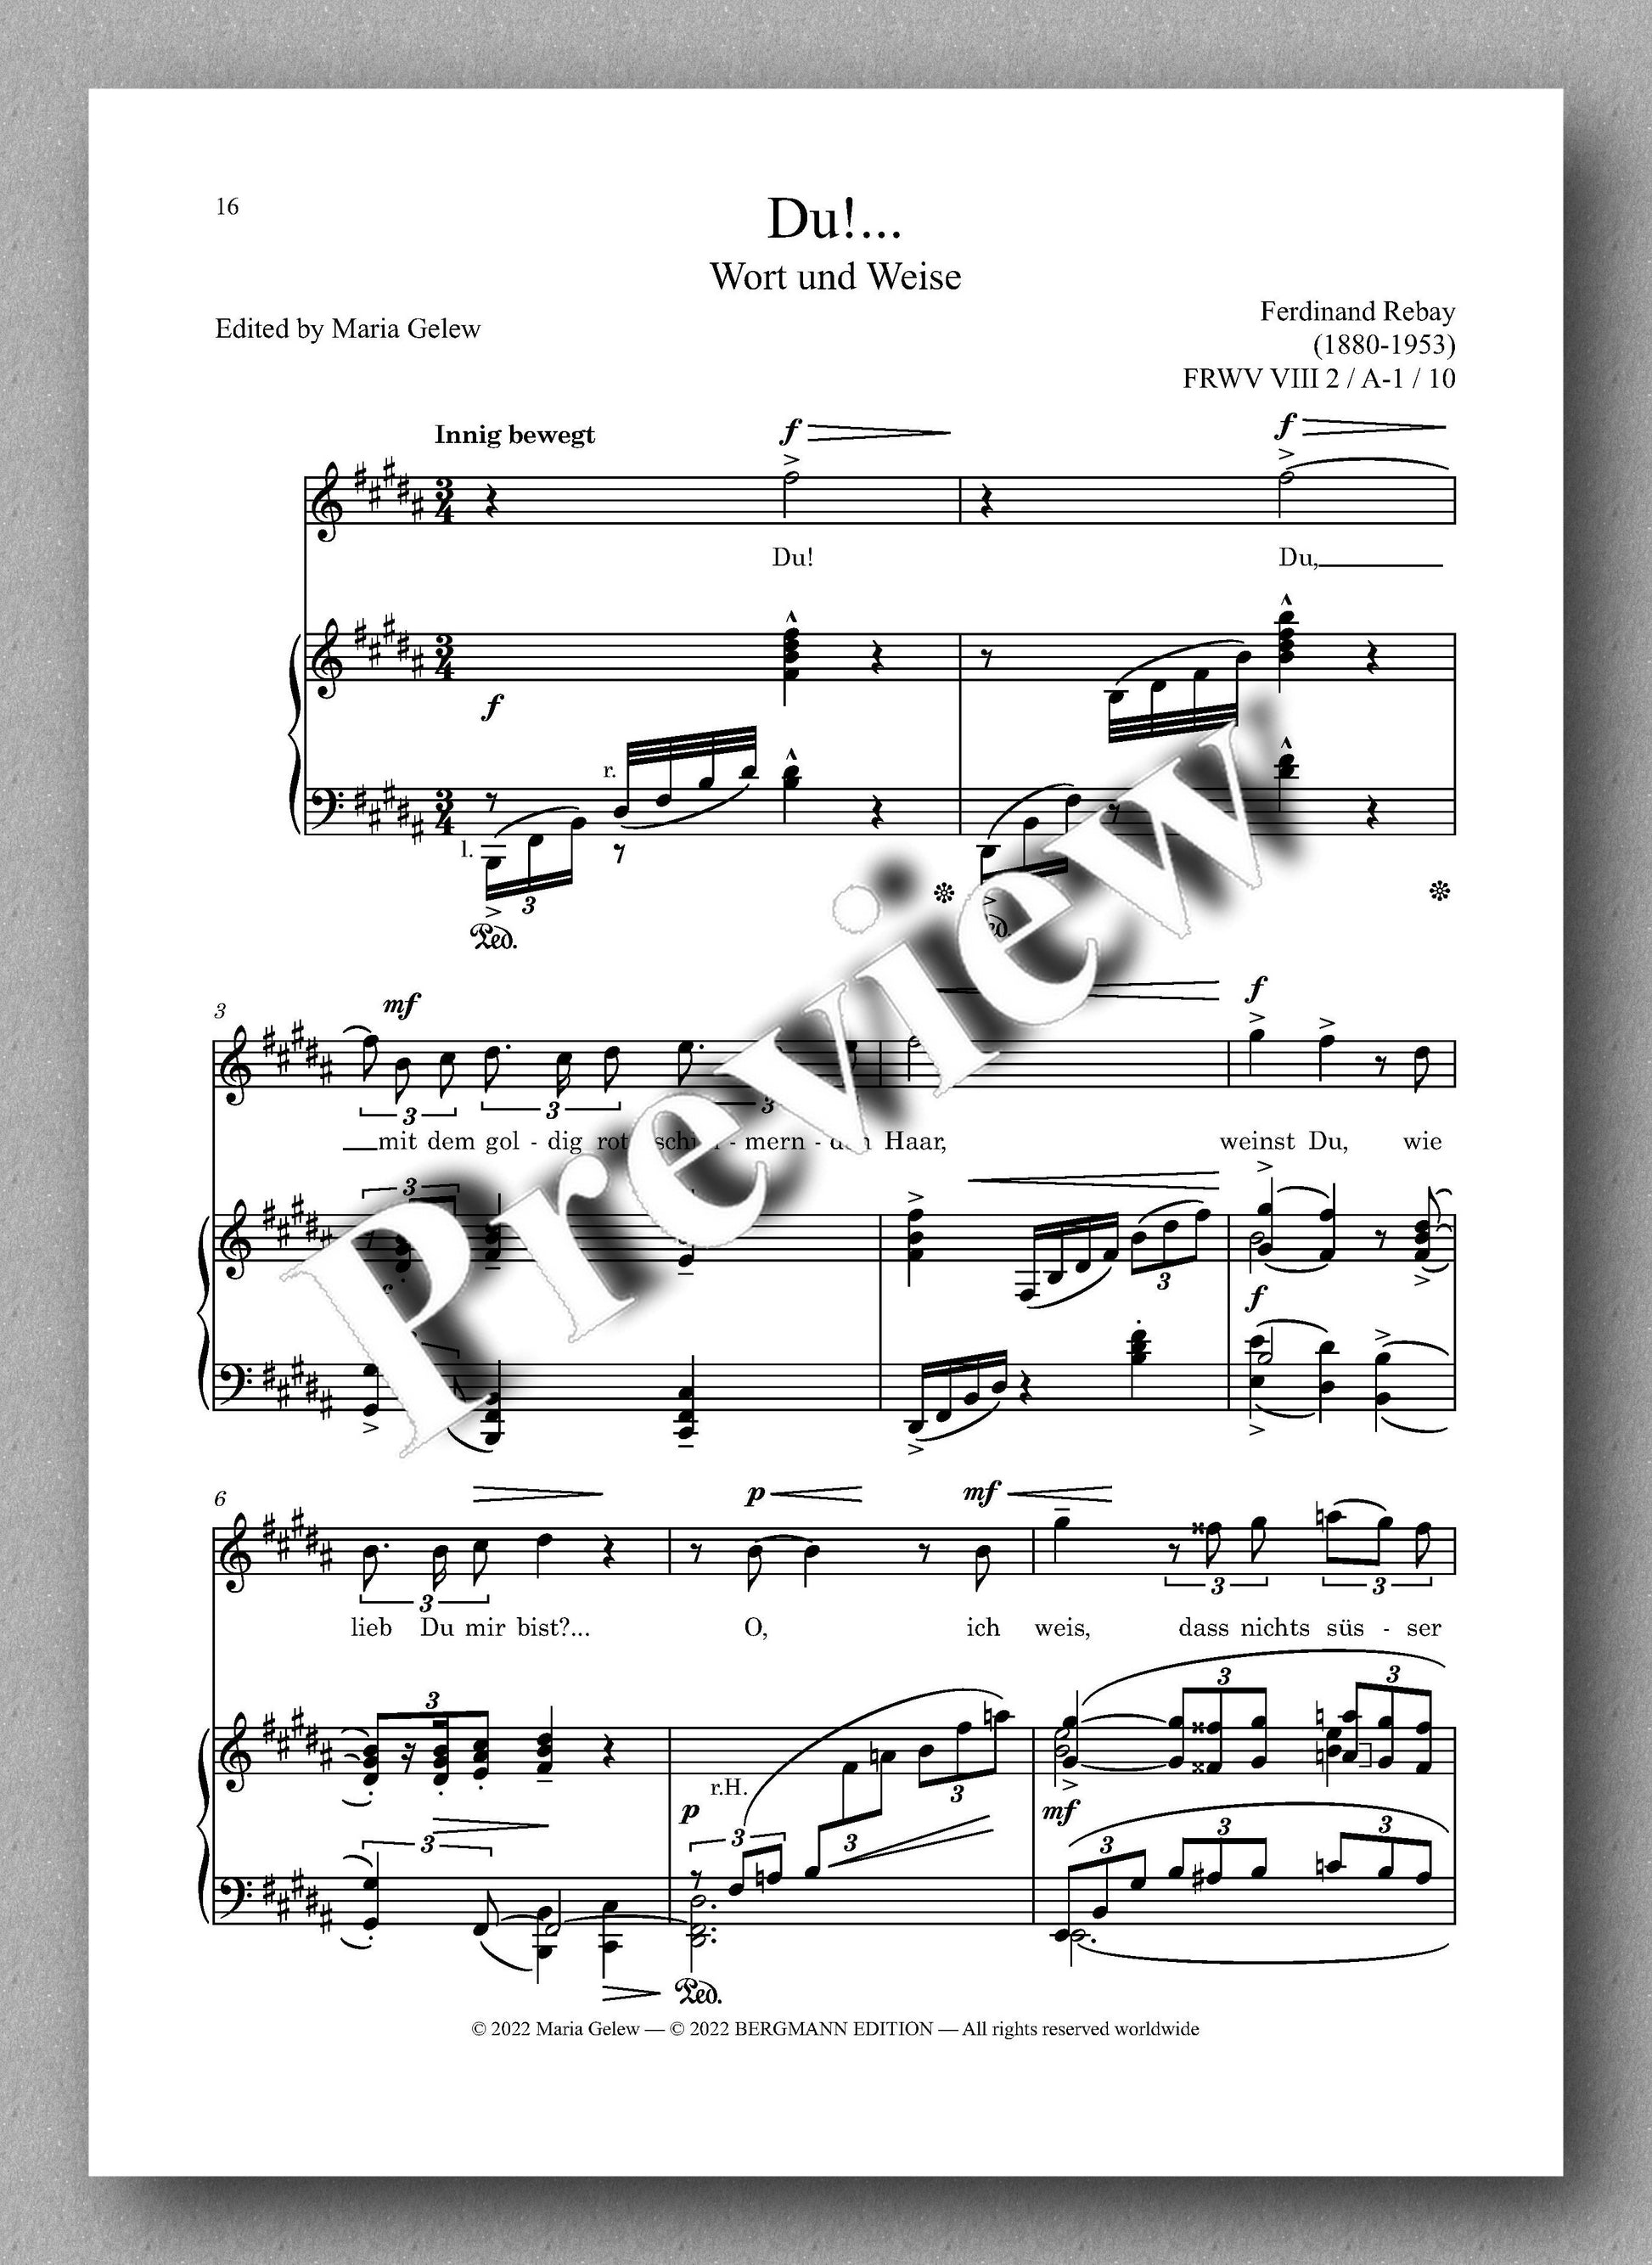 Ferdinand Rebay, Lieder nach eigenen Texten (1920) - preview of the music score 2